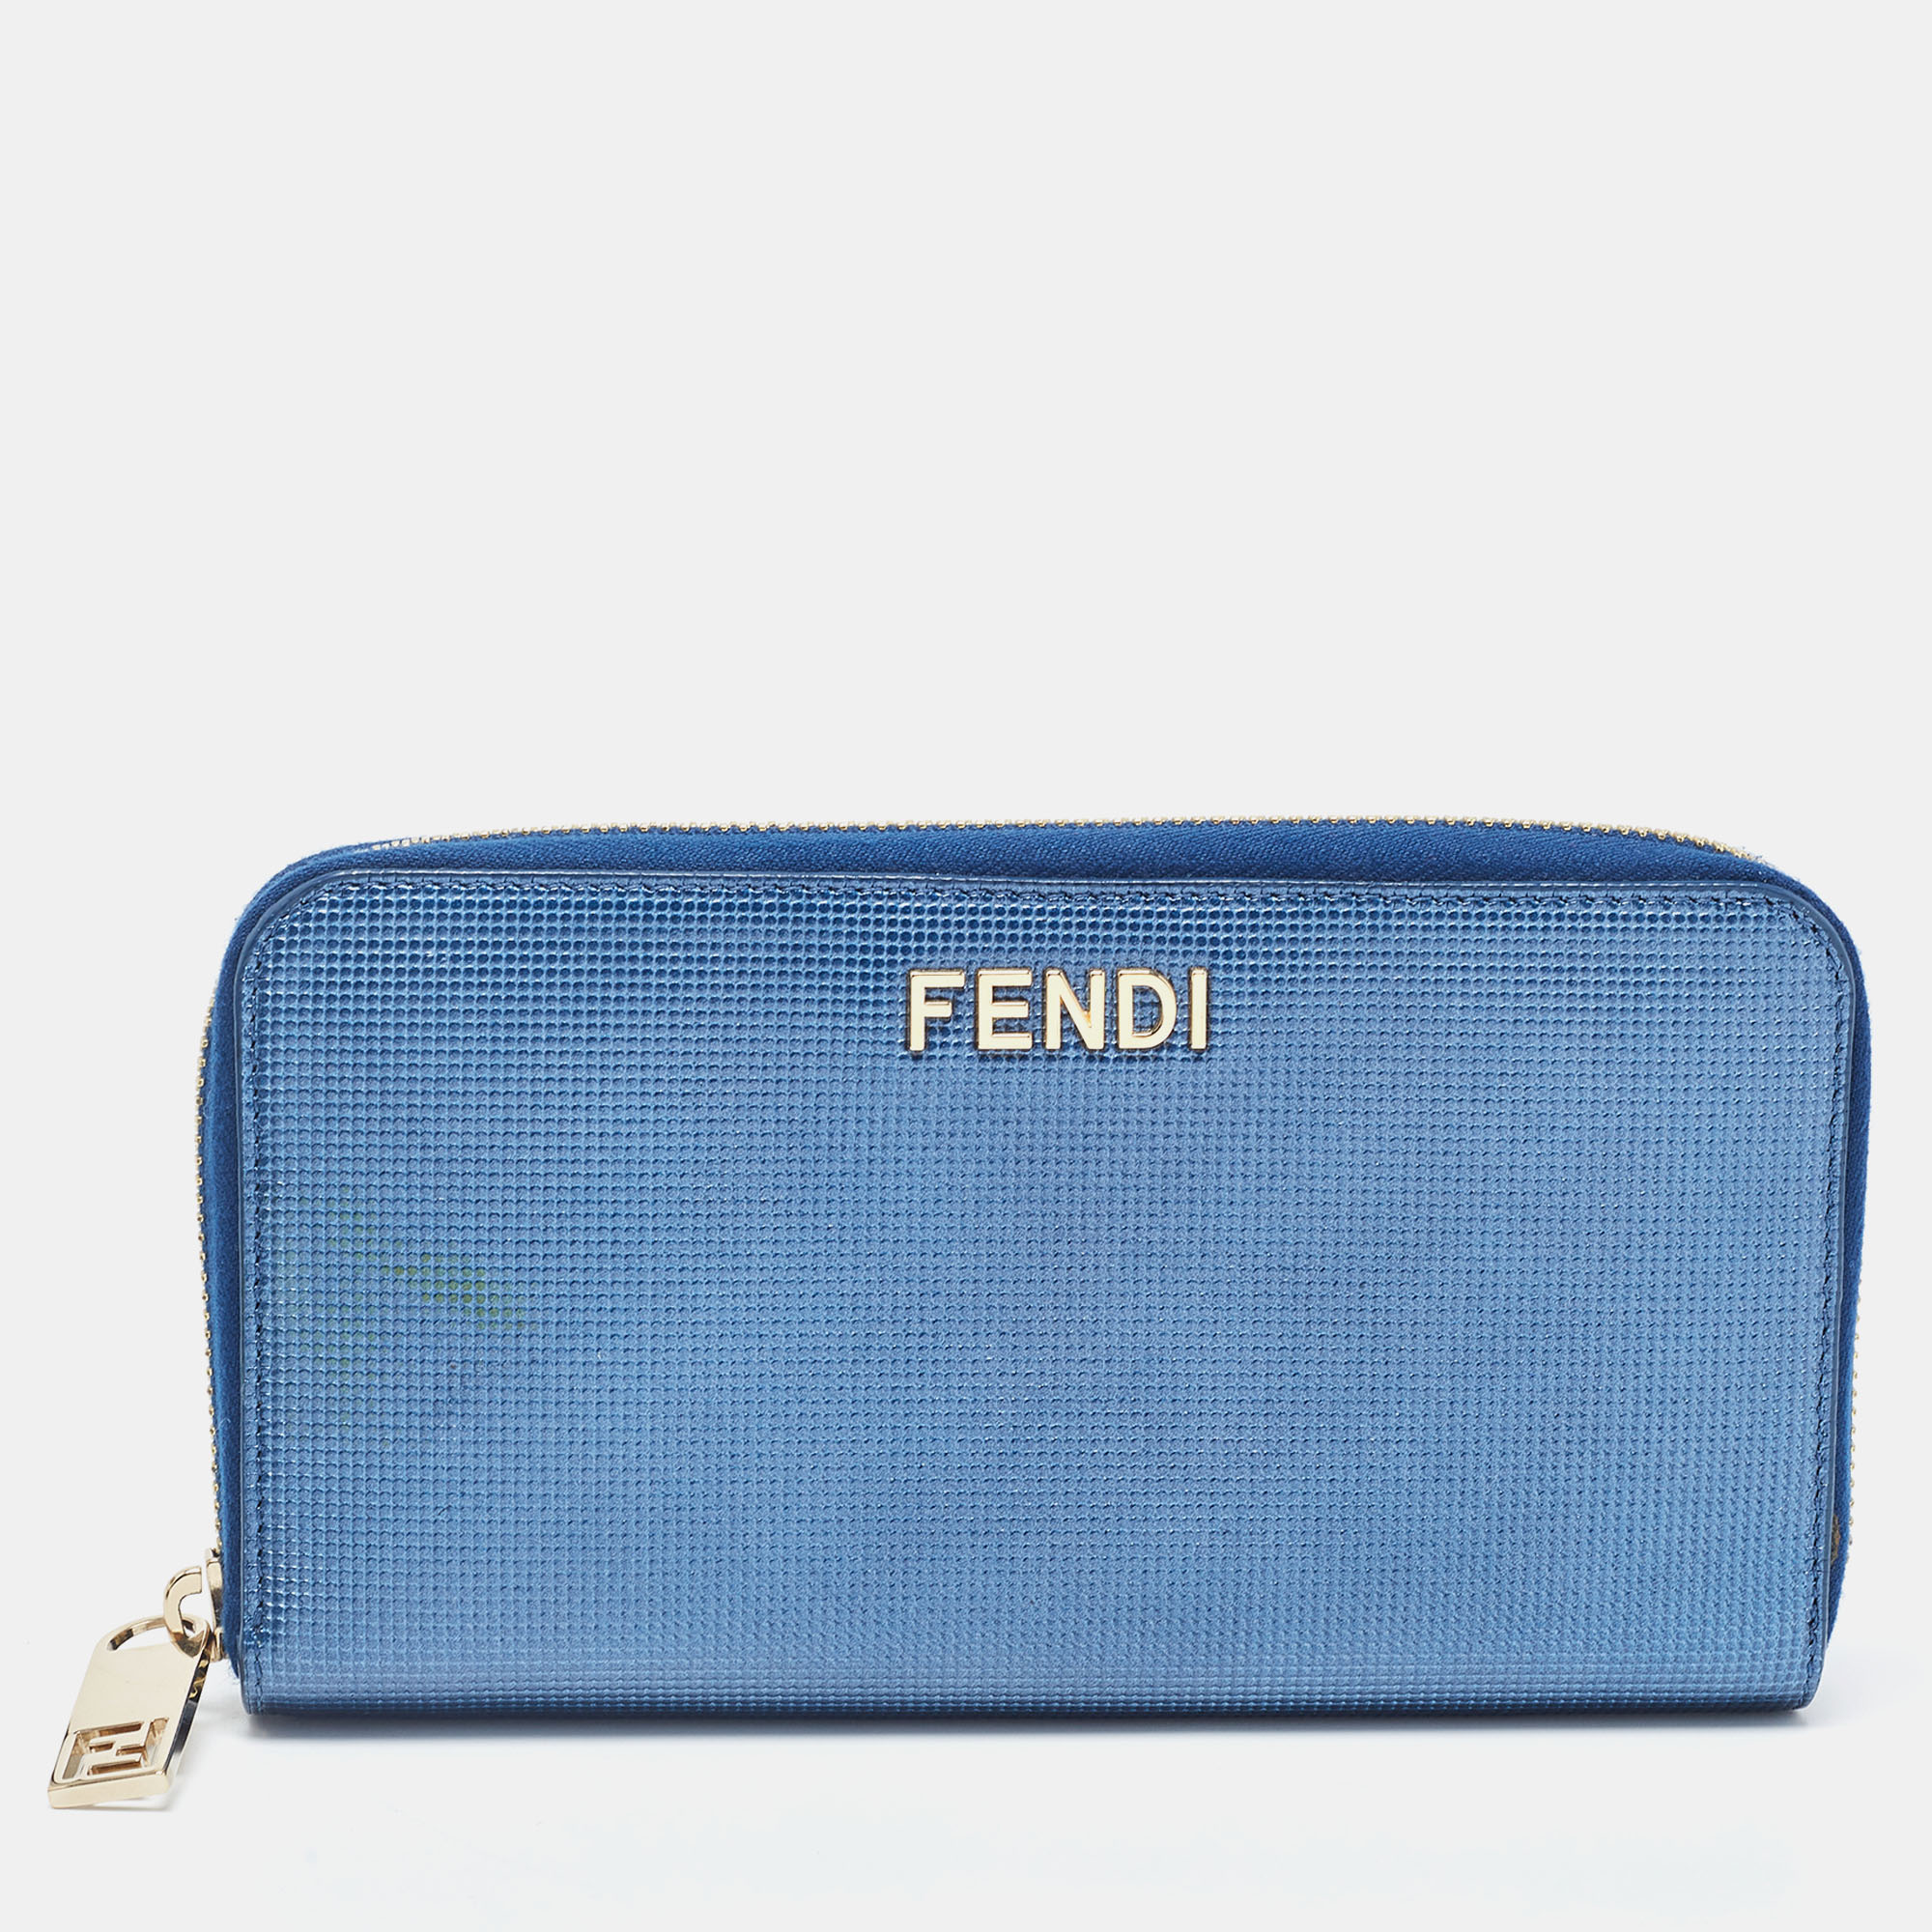 Fendi Metallic Blue Textured Leather Zip Around Continental Wallet